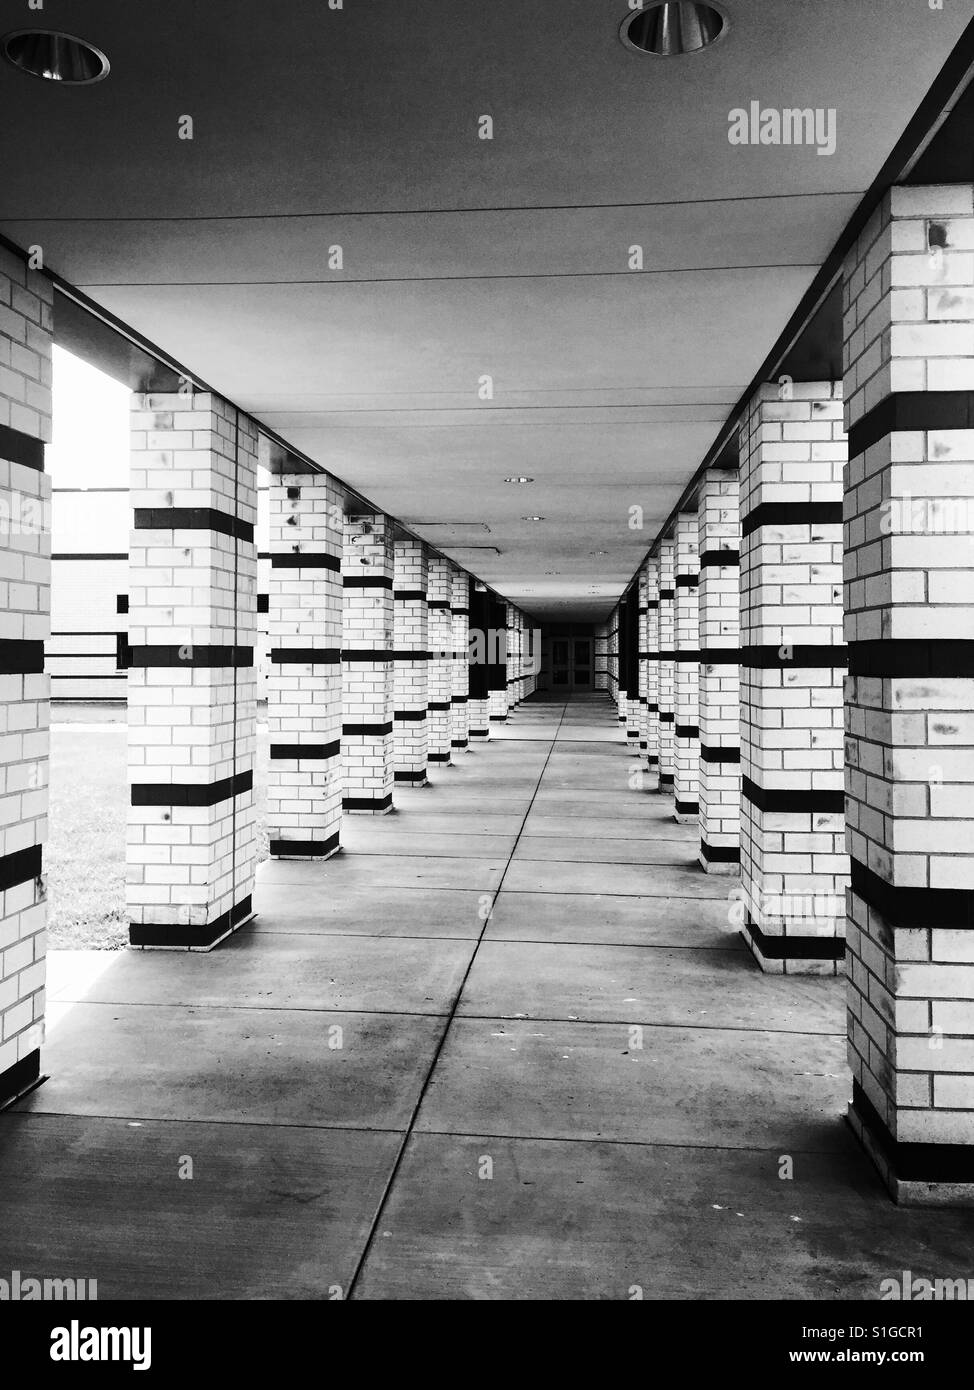 Une image en noir et blanc d'un long passage couvert menant à une porte, flanquée de piliers Banque D'Images